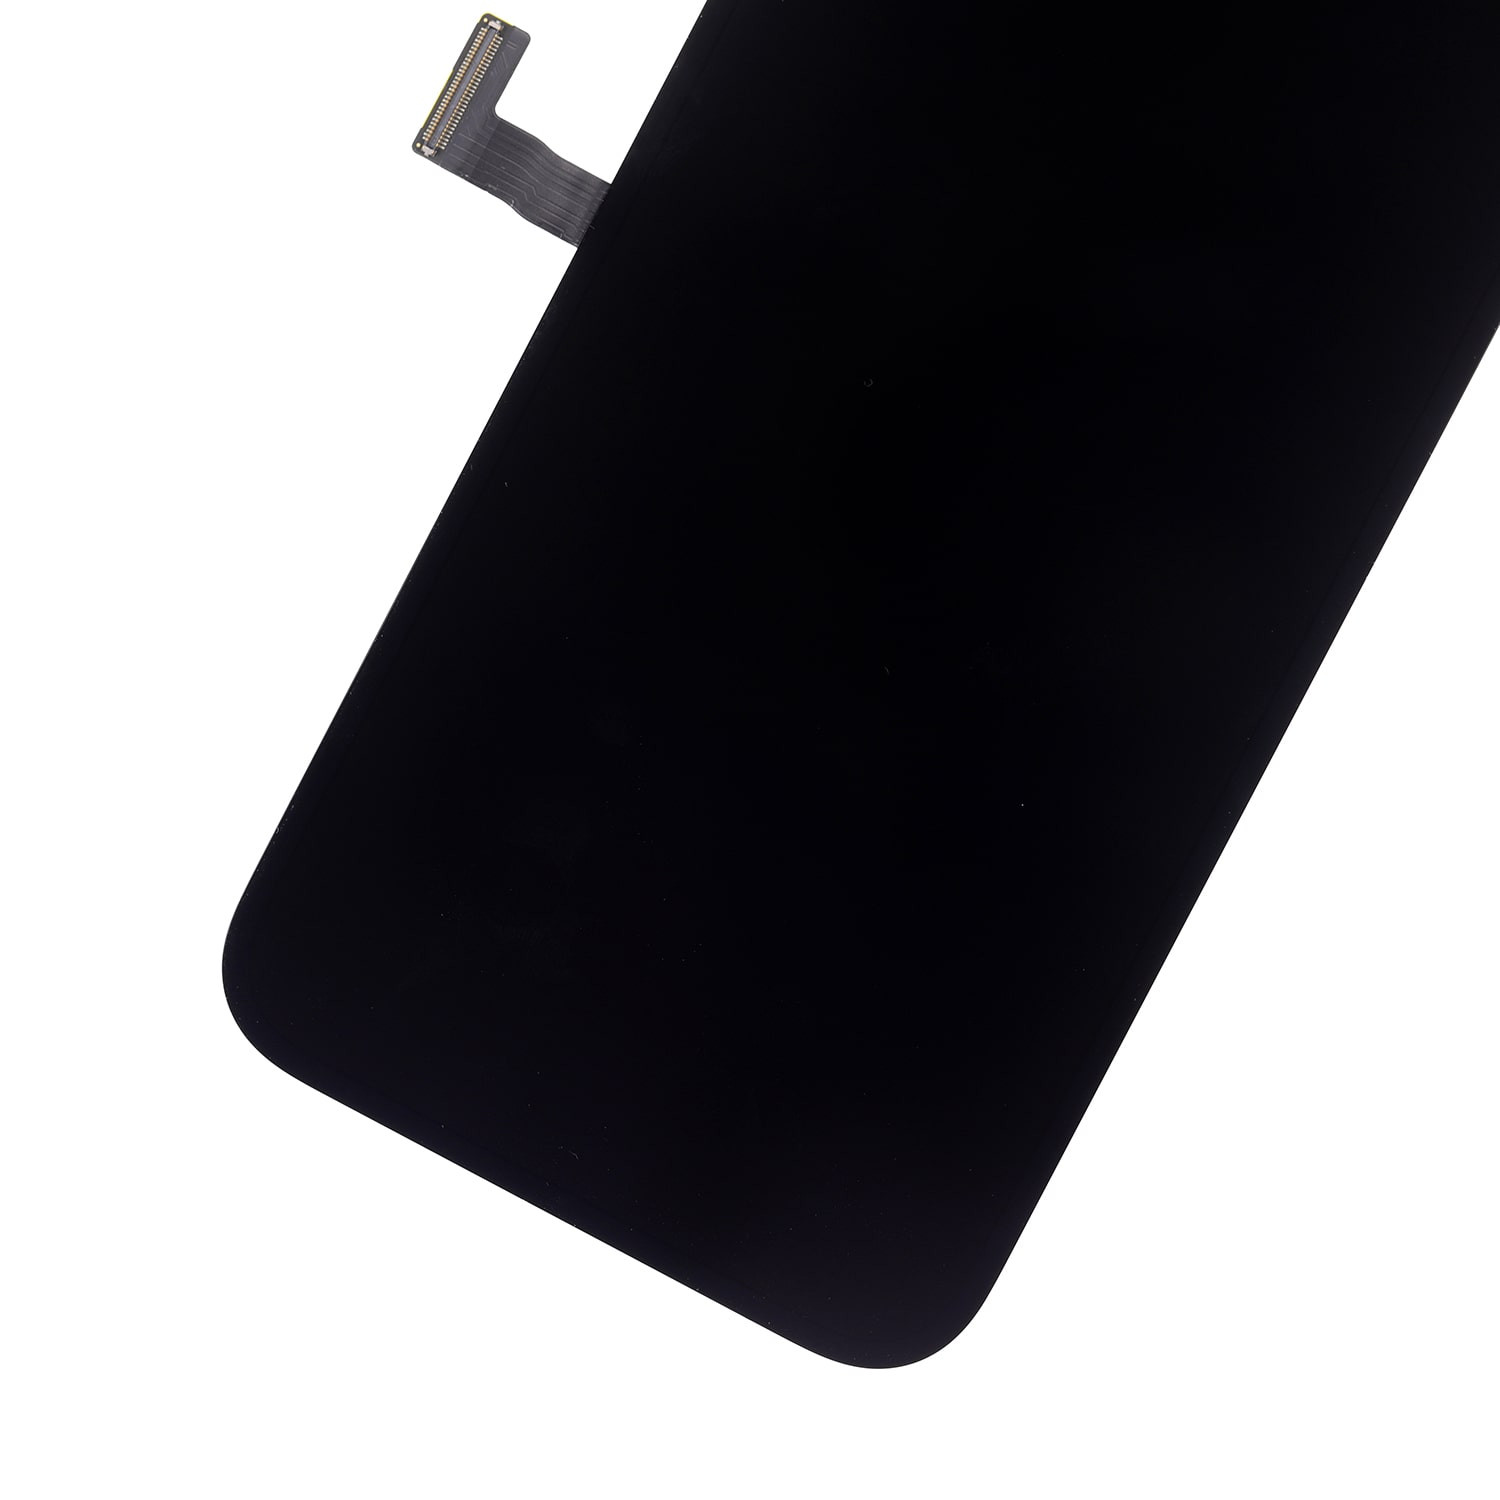 iPhone 13 Pro üçün OLED montaj ekranının dəyişdirilməsi - 4 